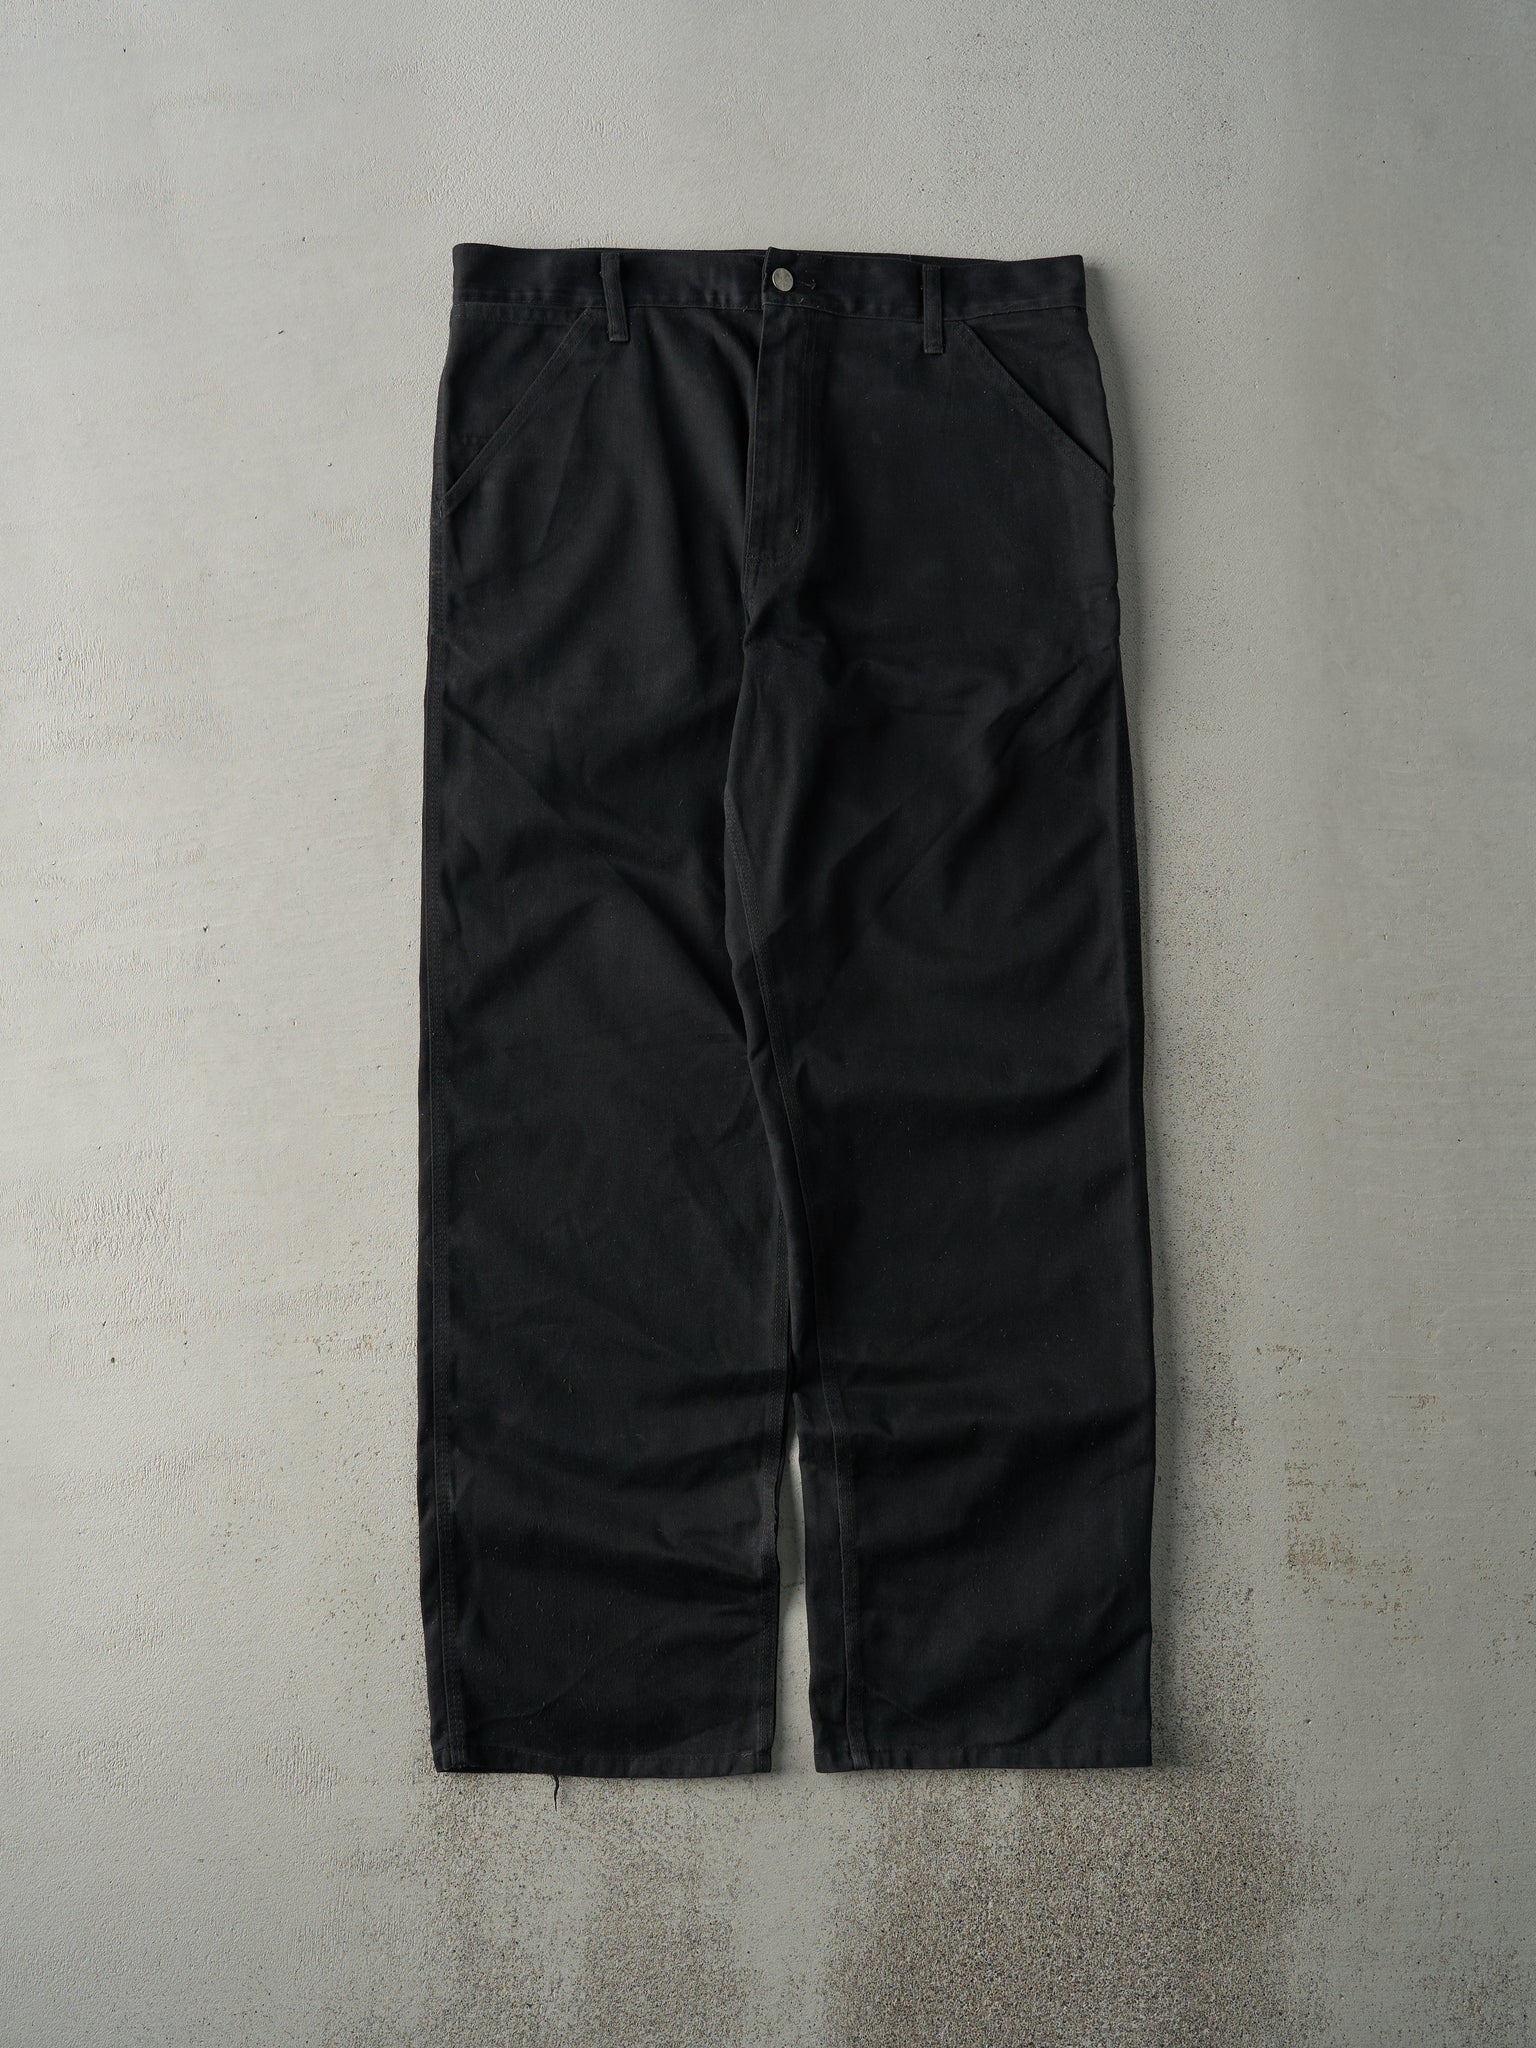 Vintage Y2K Black Carhartt Work Pants (35x31)